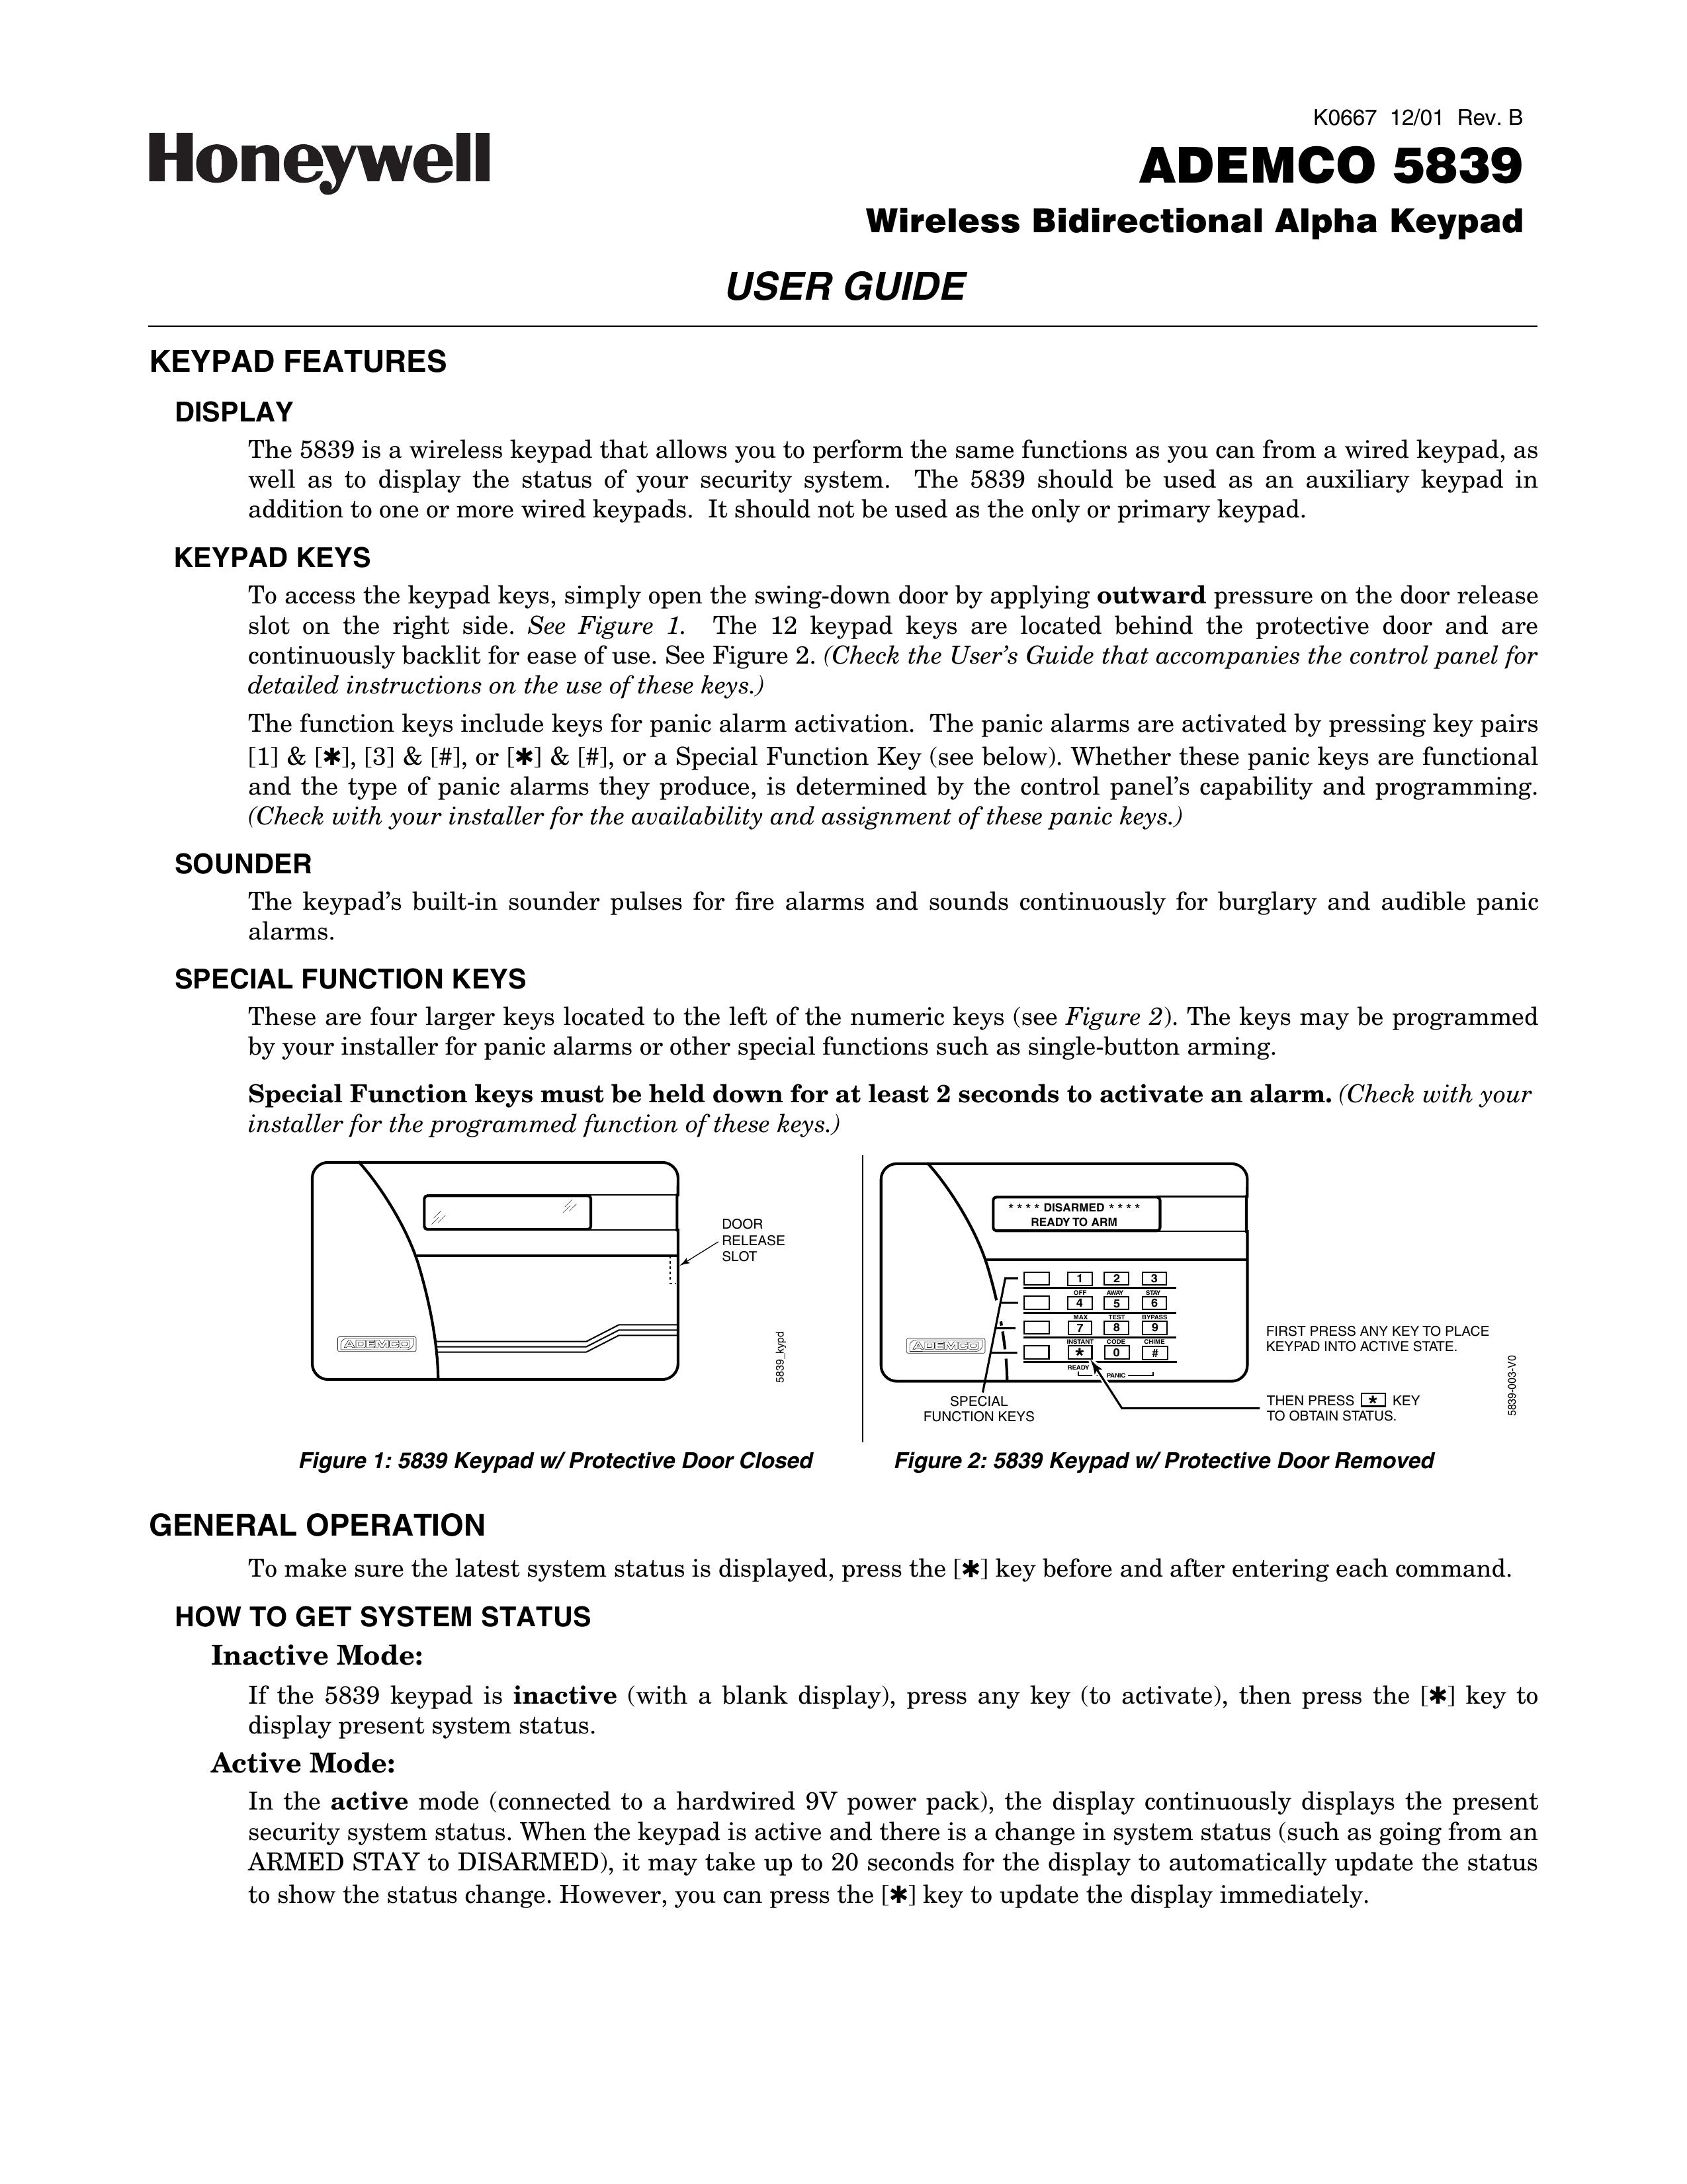 Honeywell 5839 Outdoor Ceiling Fan User Manual